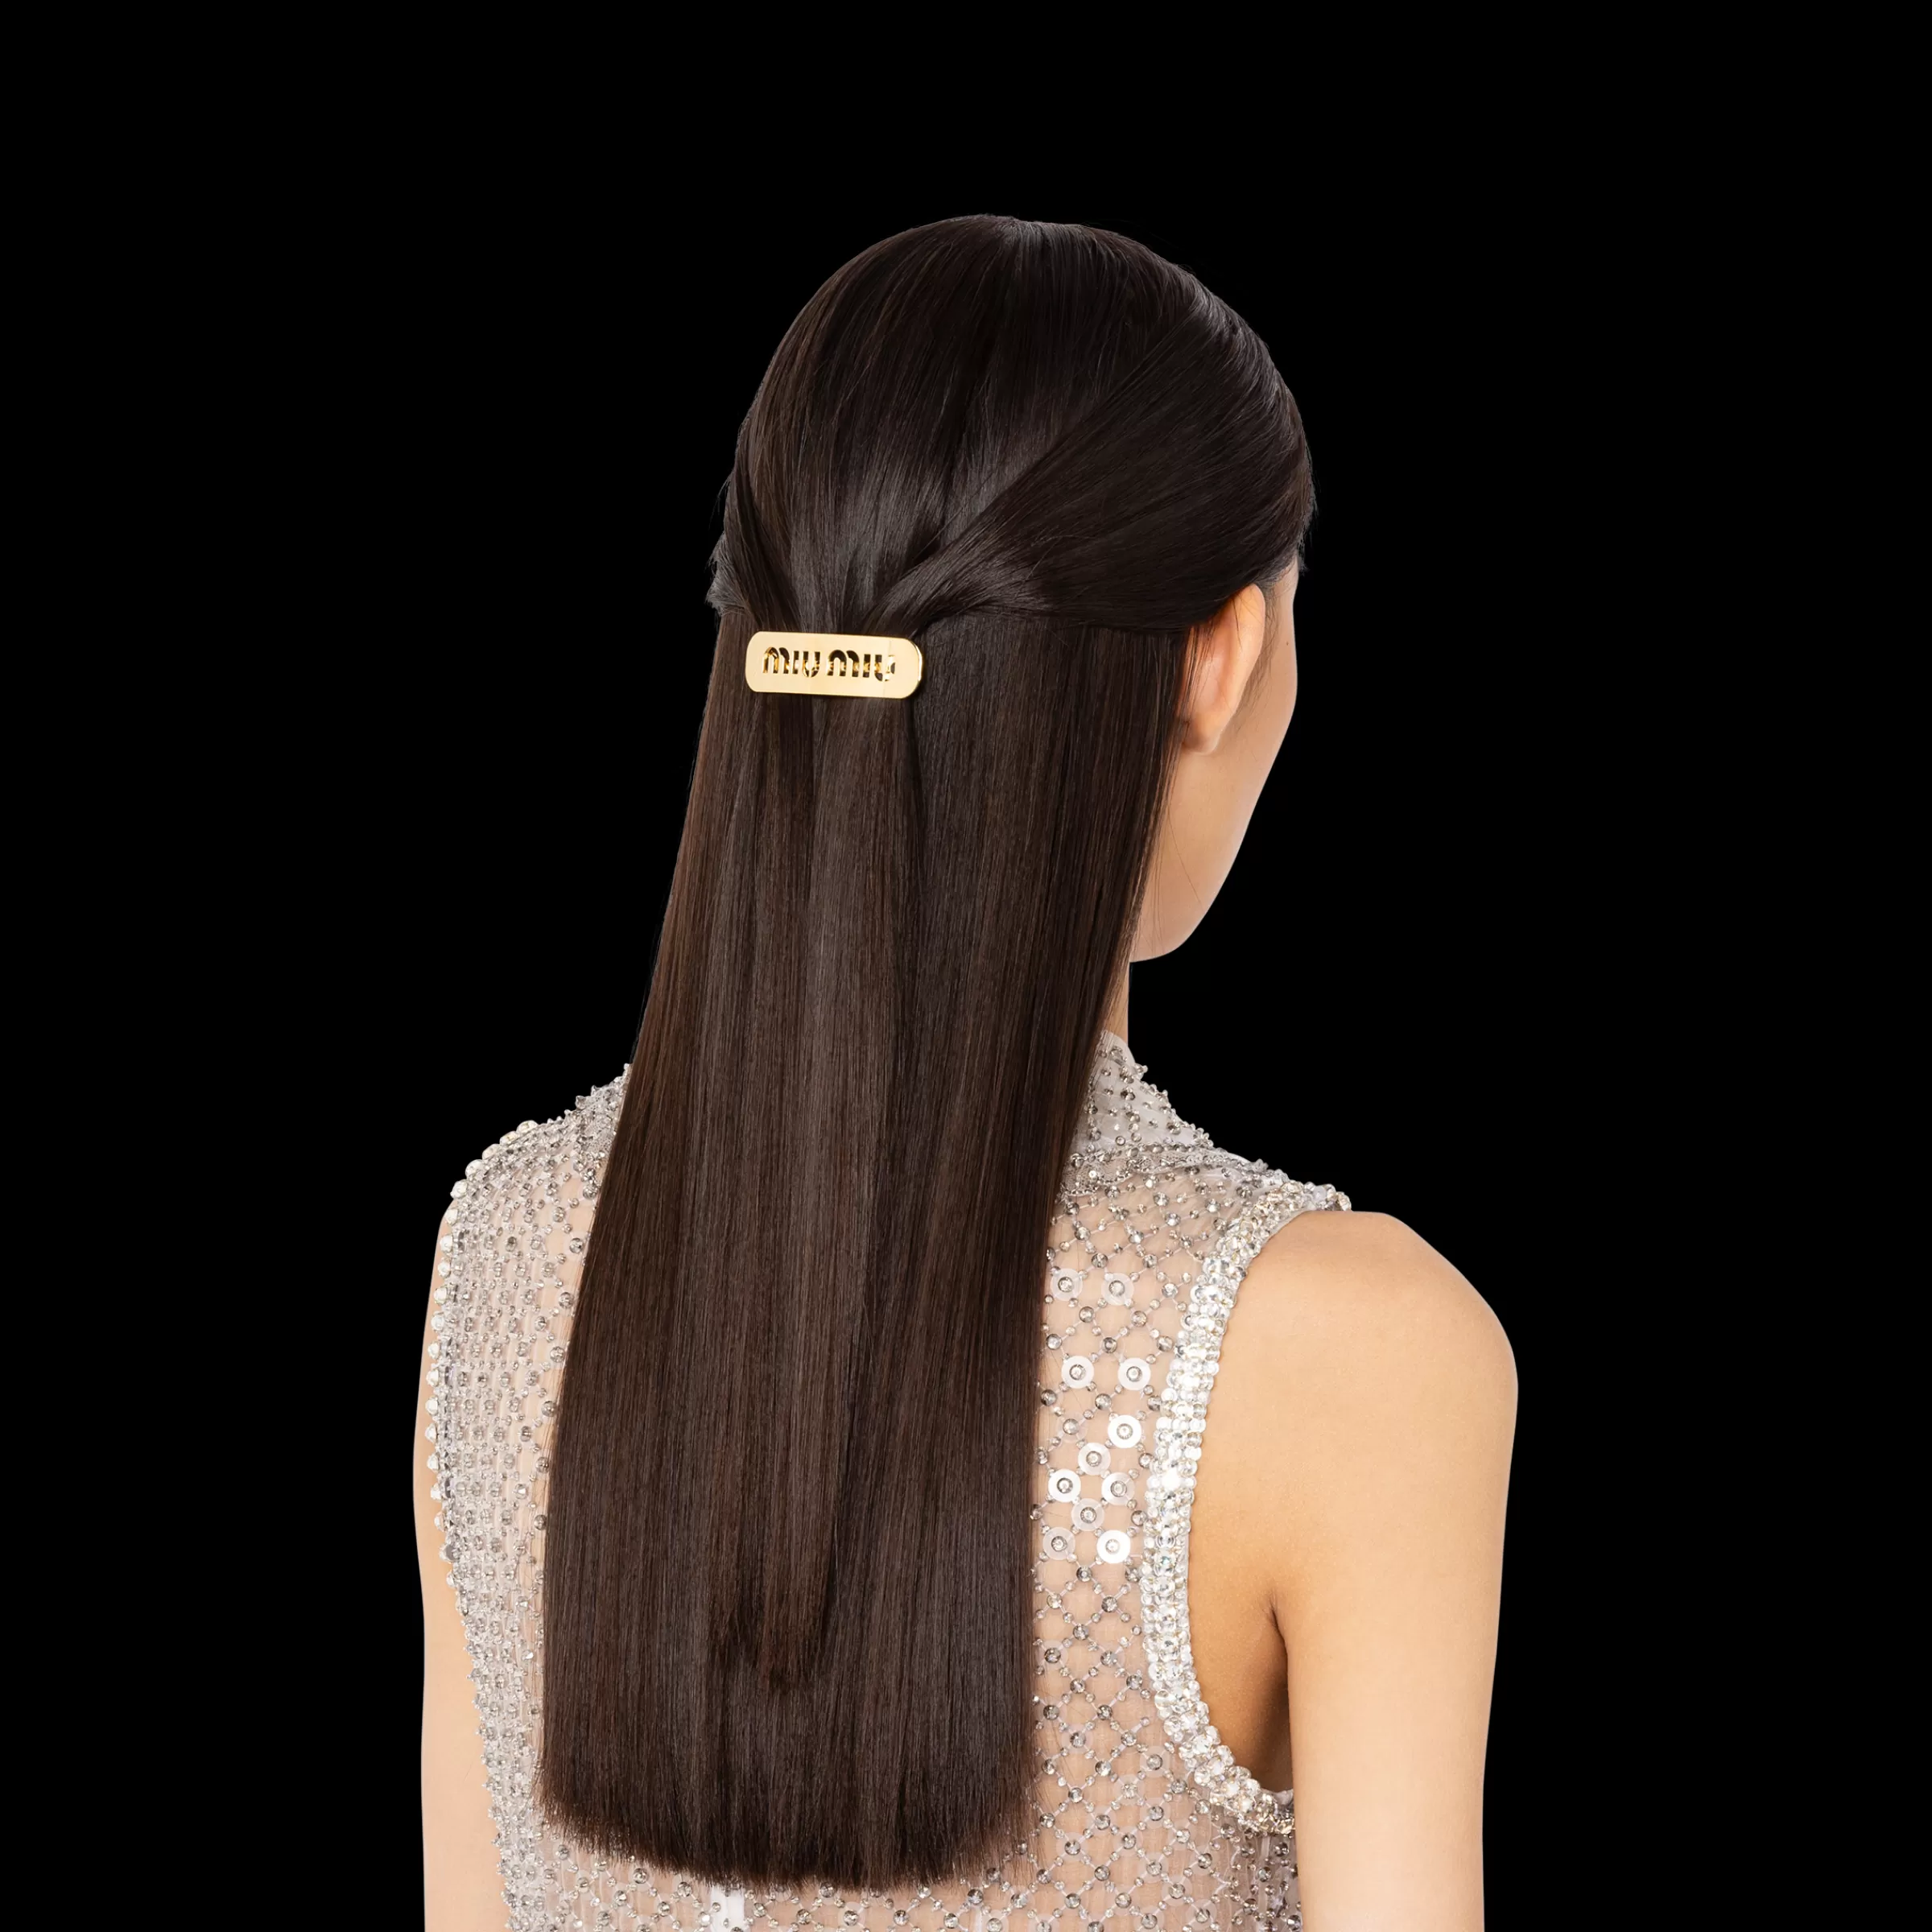 Miu Miu Miu Logo Hair Clip |